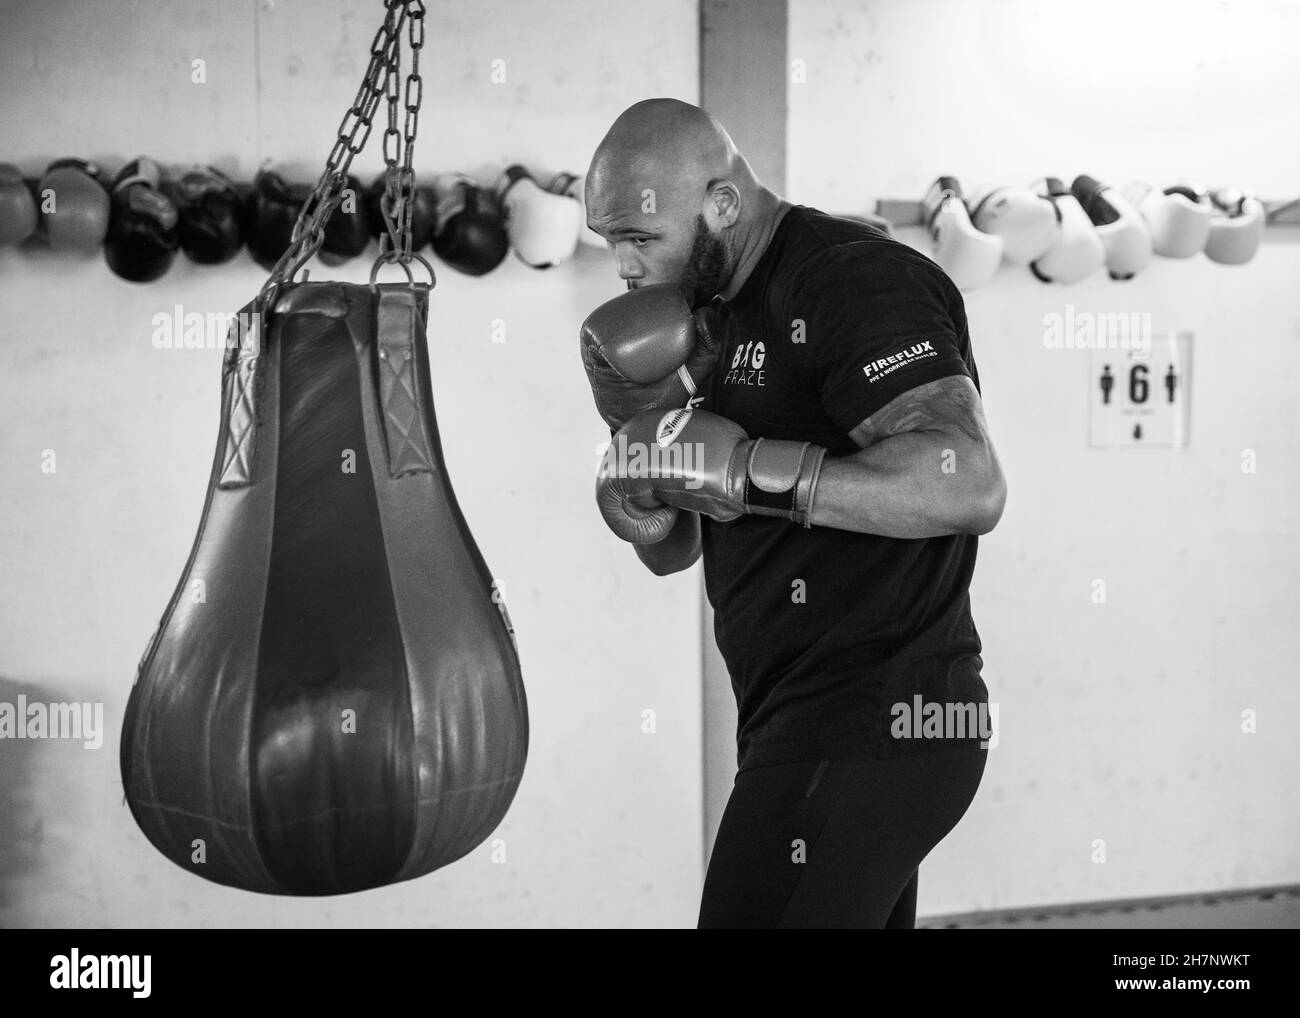 11/03/21 Angleterre.Frazer Clarke, boxeur britannique de poids lourds, s'entraîne en isolement à la South Derbyshire Boxing Academy de Swadlincote, au Royaume-Uni Banque D'Images